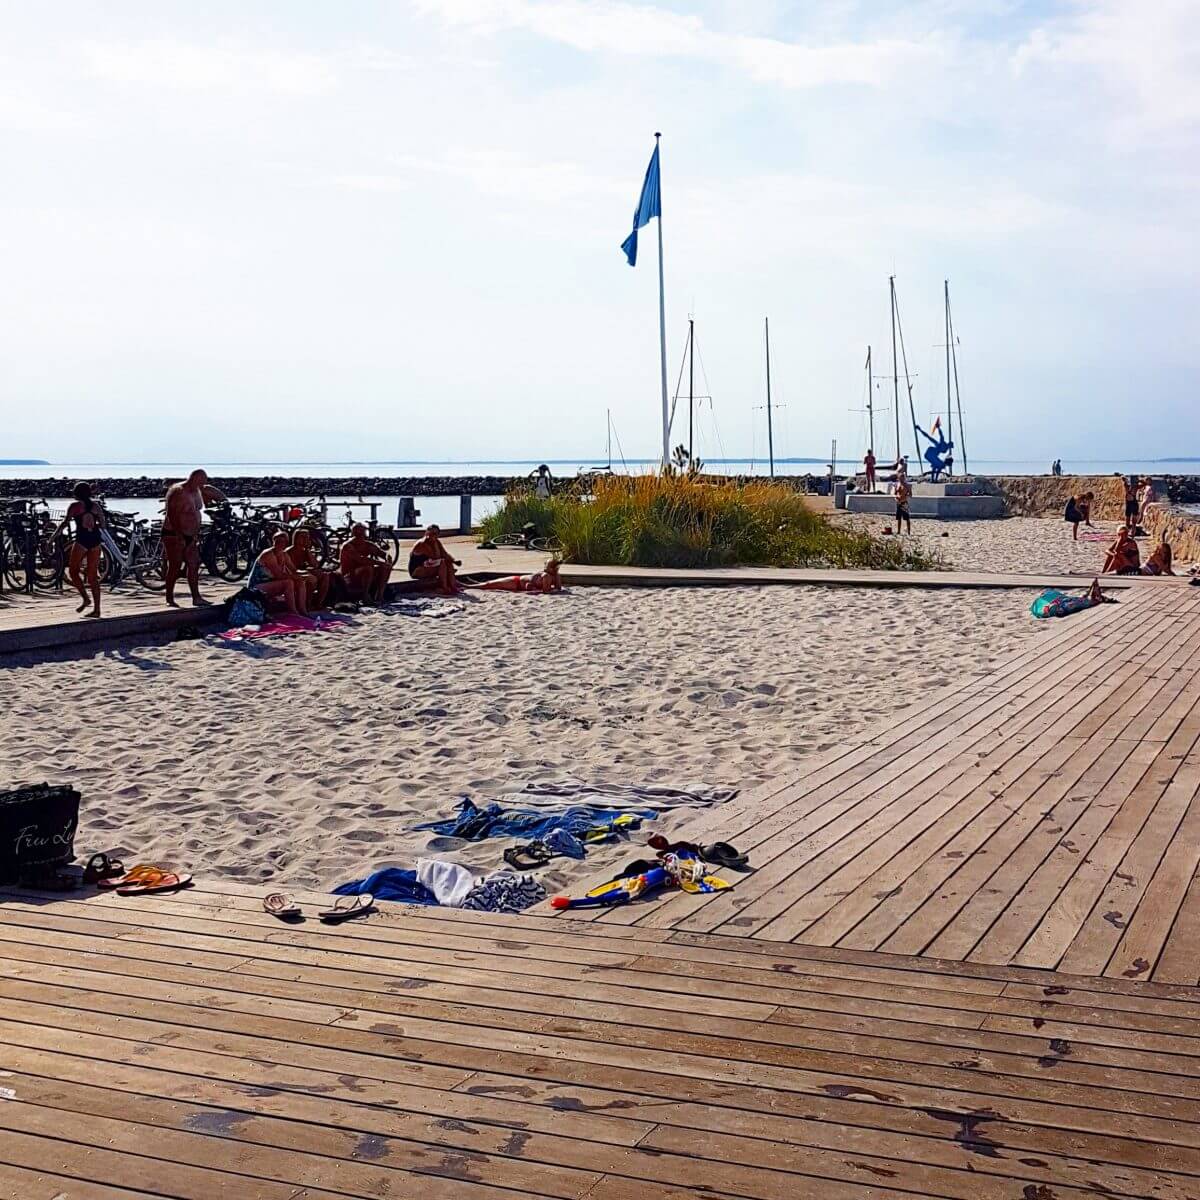 Vakantie met kids: sprookjesachtig Funen in Denemarken - de oude stad Bogense met strand en haven - zwempier